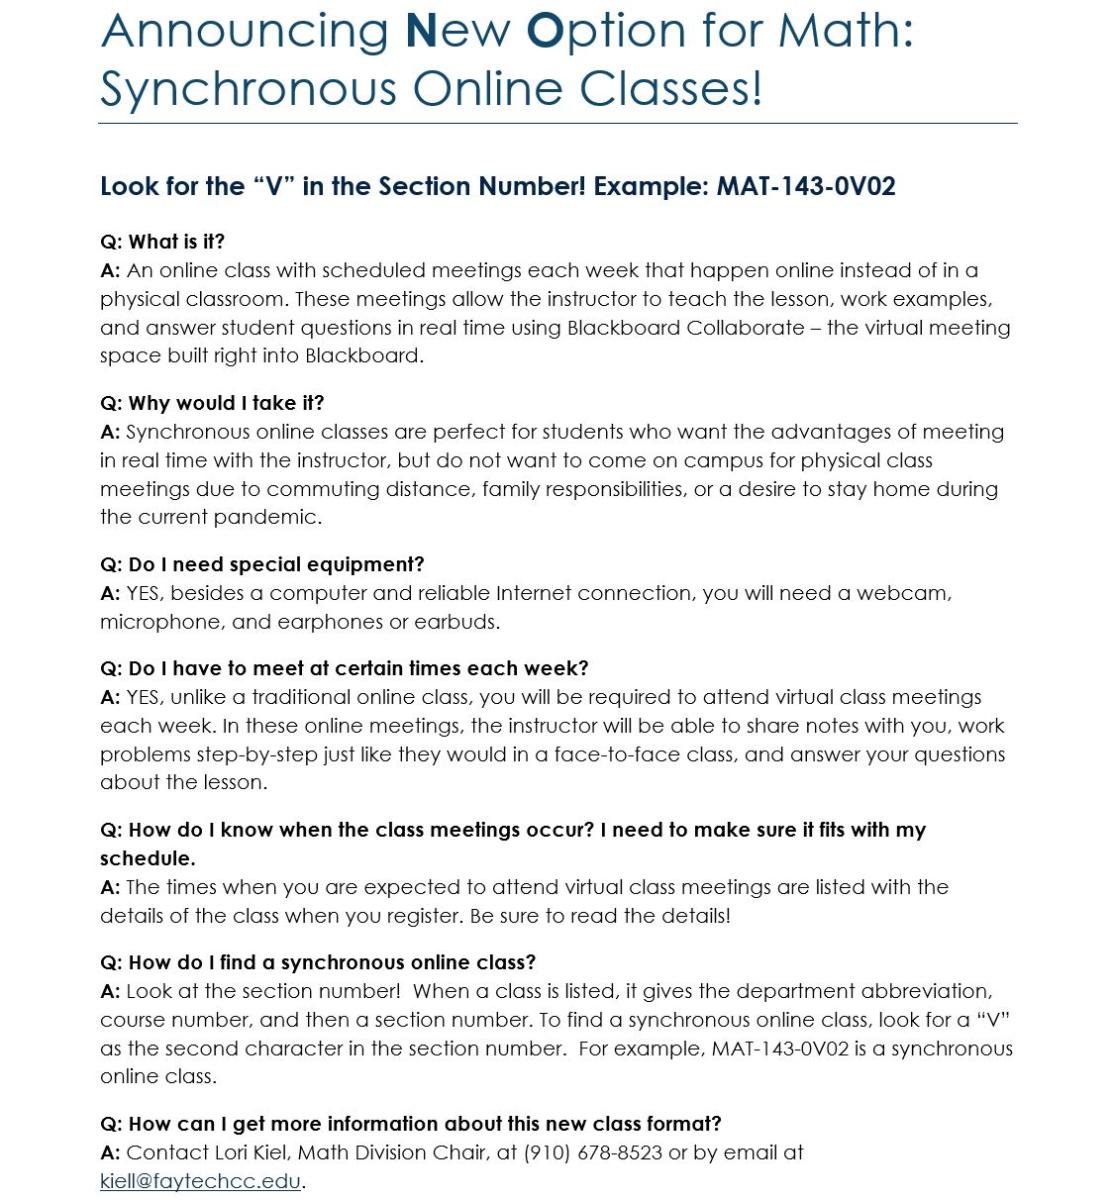 Synchronous Online Classes